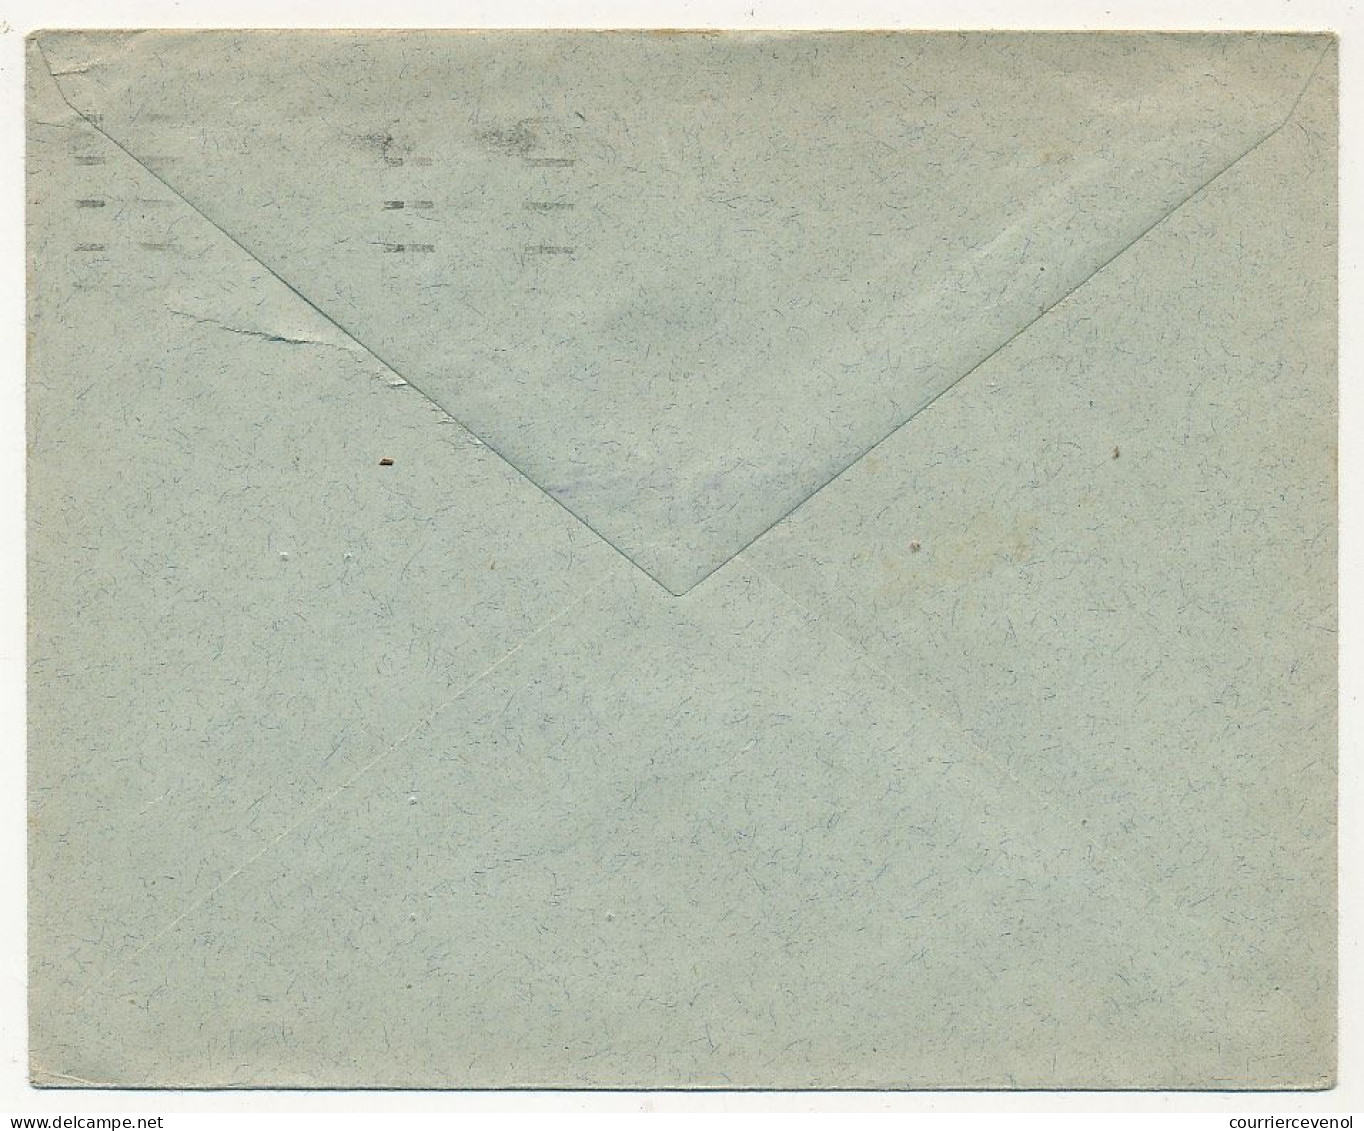 SUISSE - Enveloppe Affr. 20c + 20c Projuventute 1926 - Zürich 3 Bahnhof - Lettres & Documents